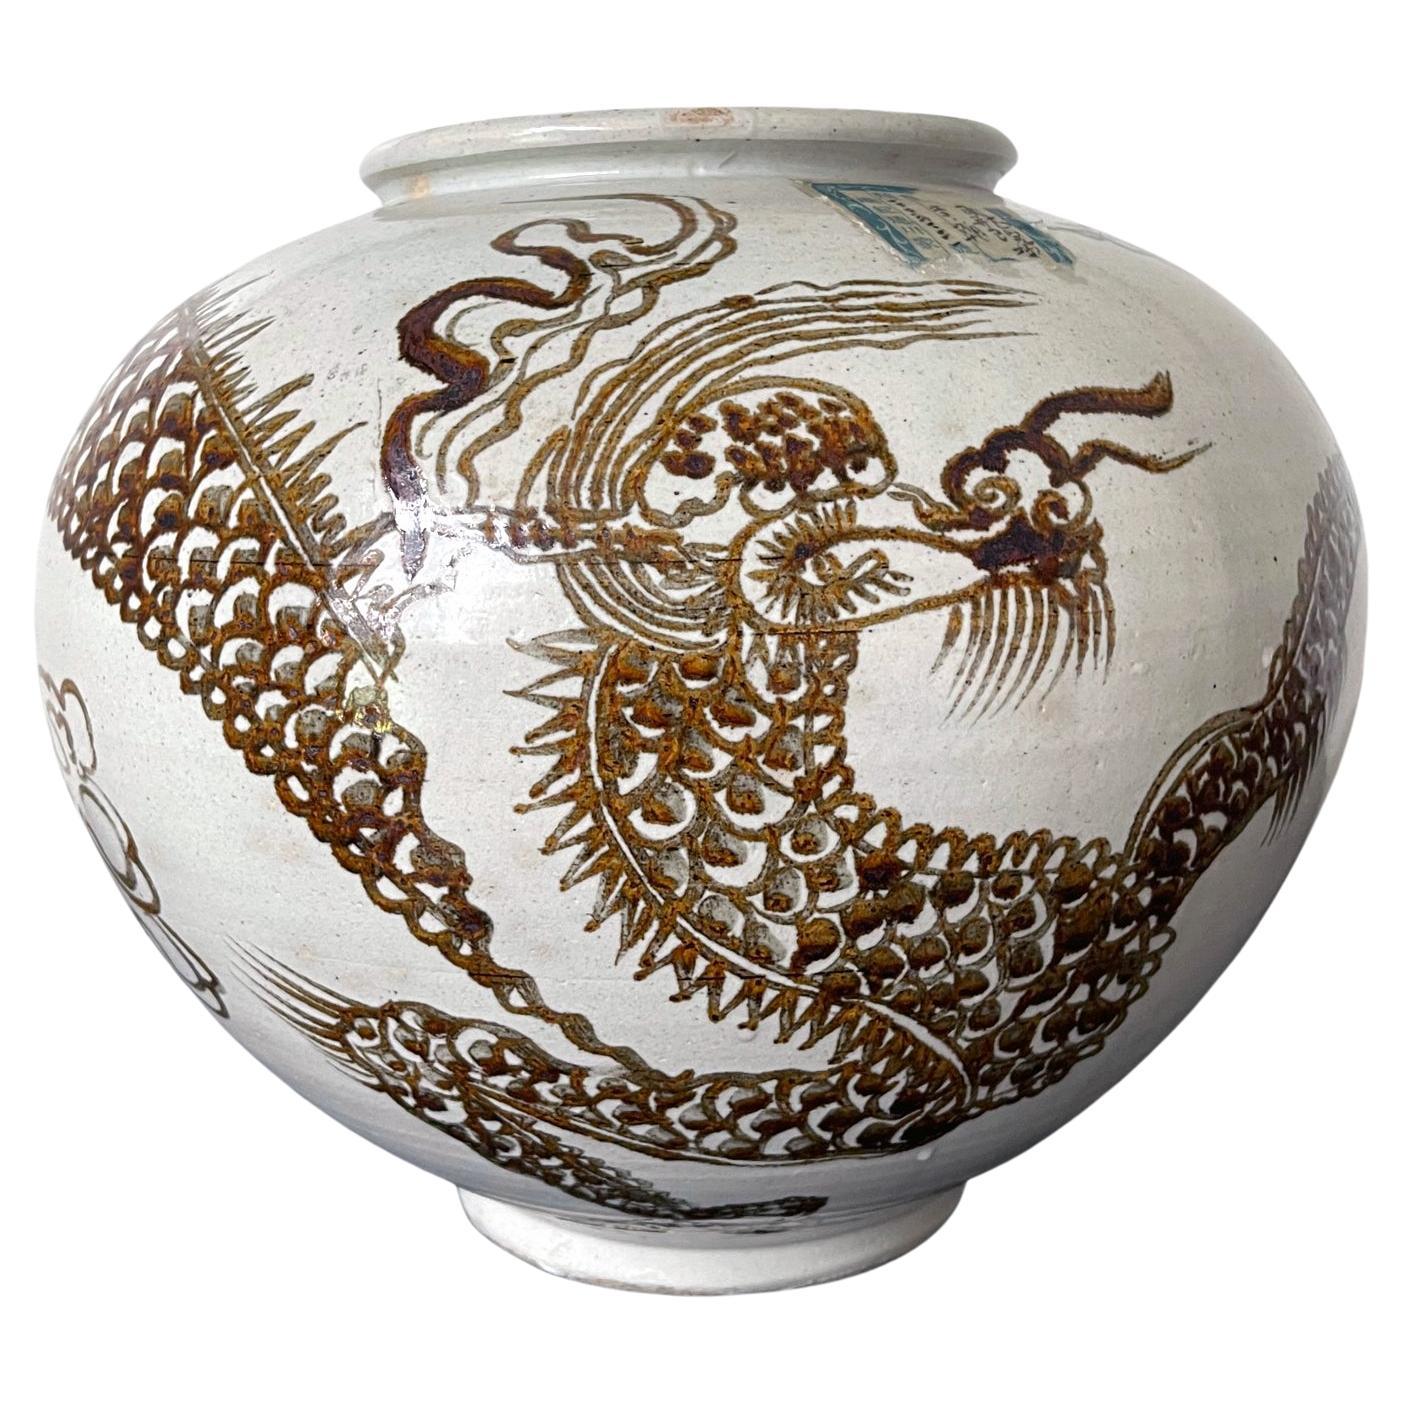 Pot en céramique coréenne en forme de lune avec dragon de la dynastie Joseon